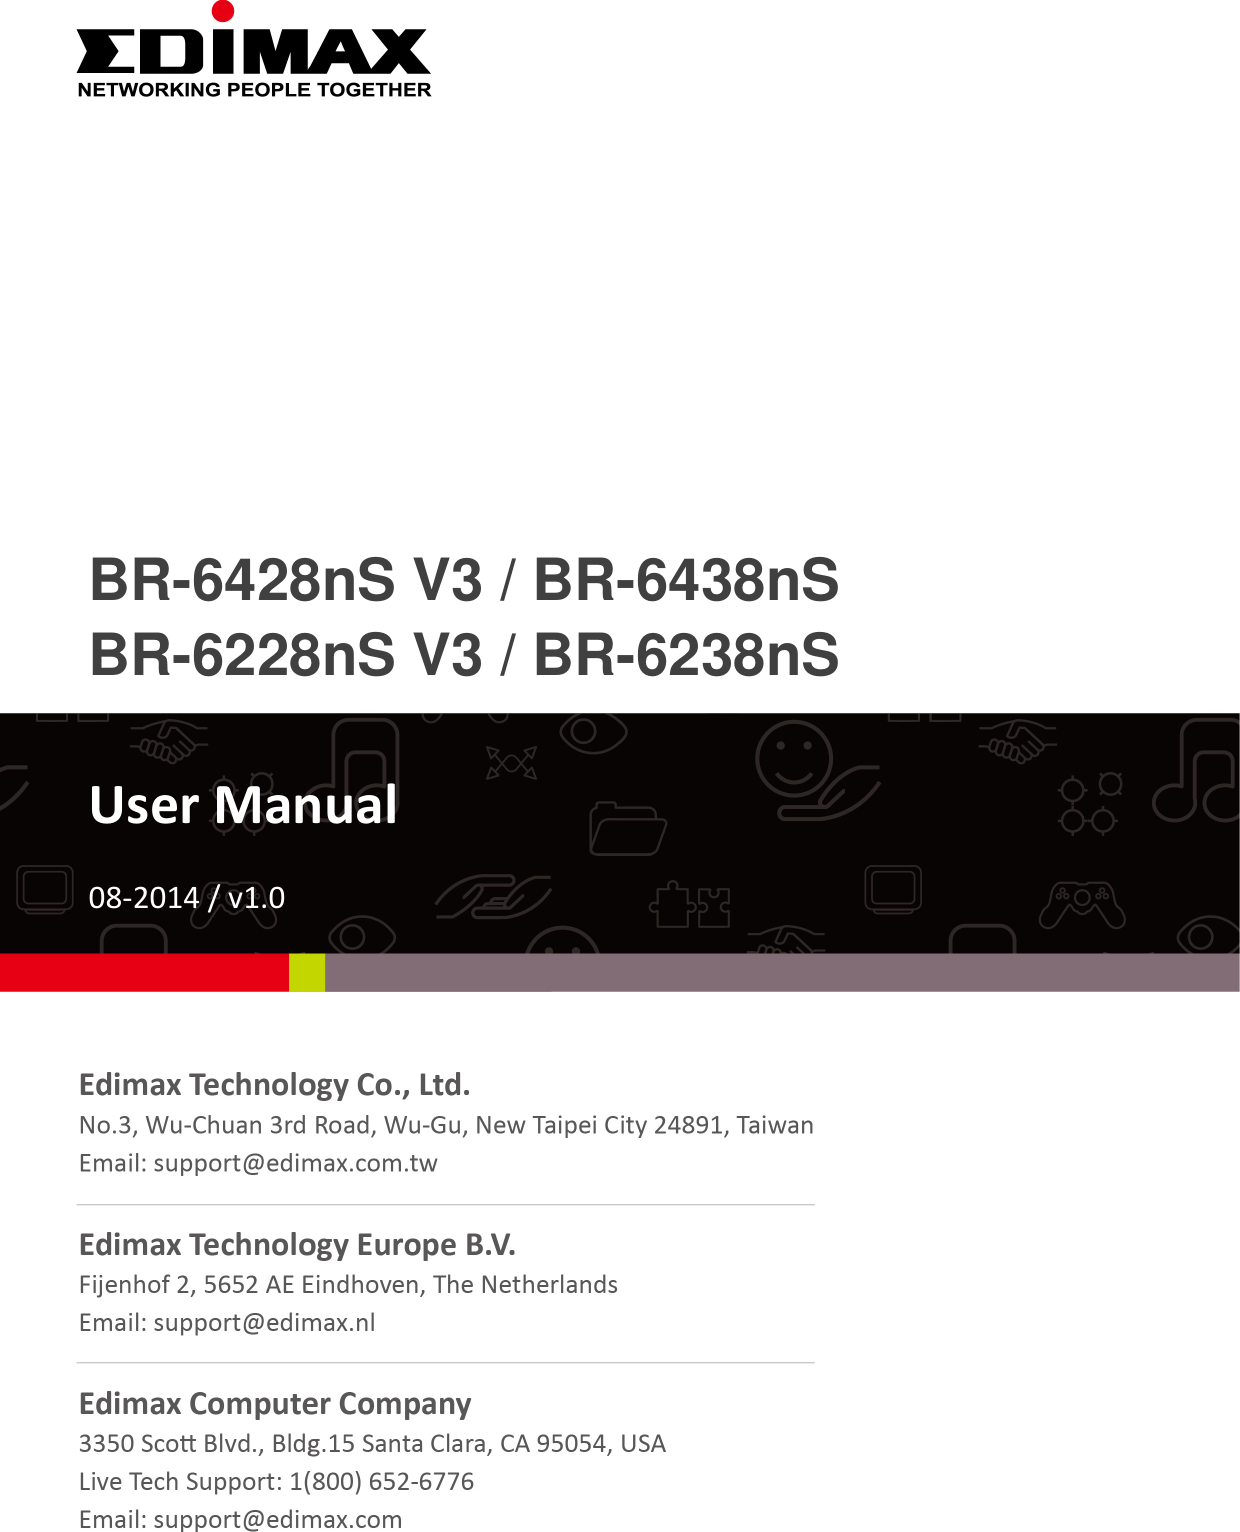               BR-6428nS V3 / BR-6438nS BR-6228nS V3 / BR-6238nS   User Manual  08-2014 / v1.0              